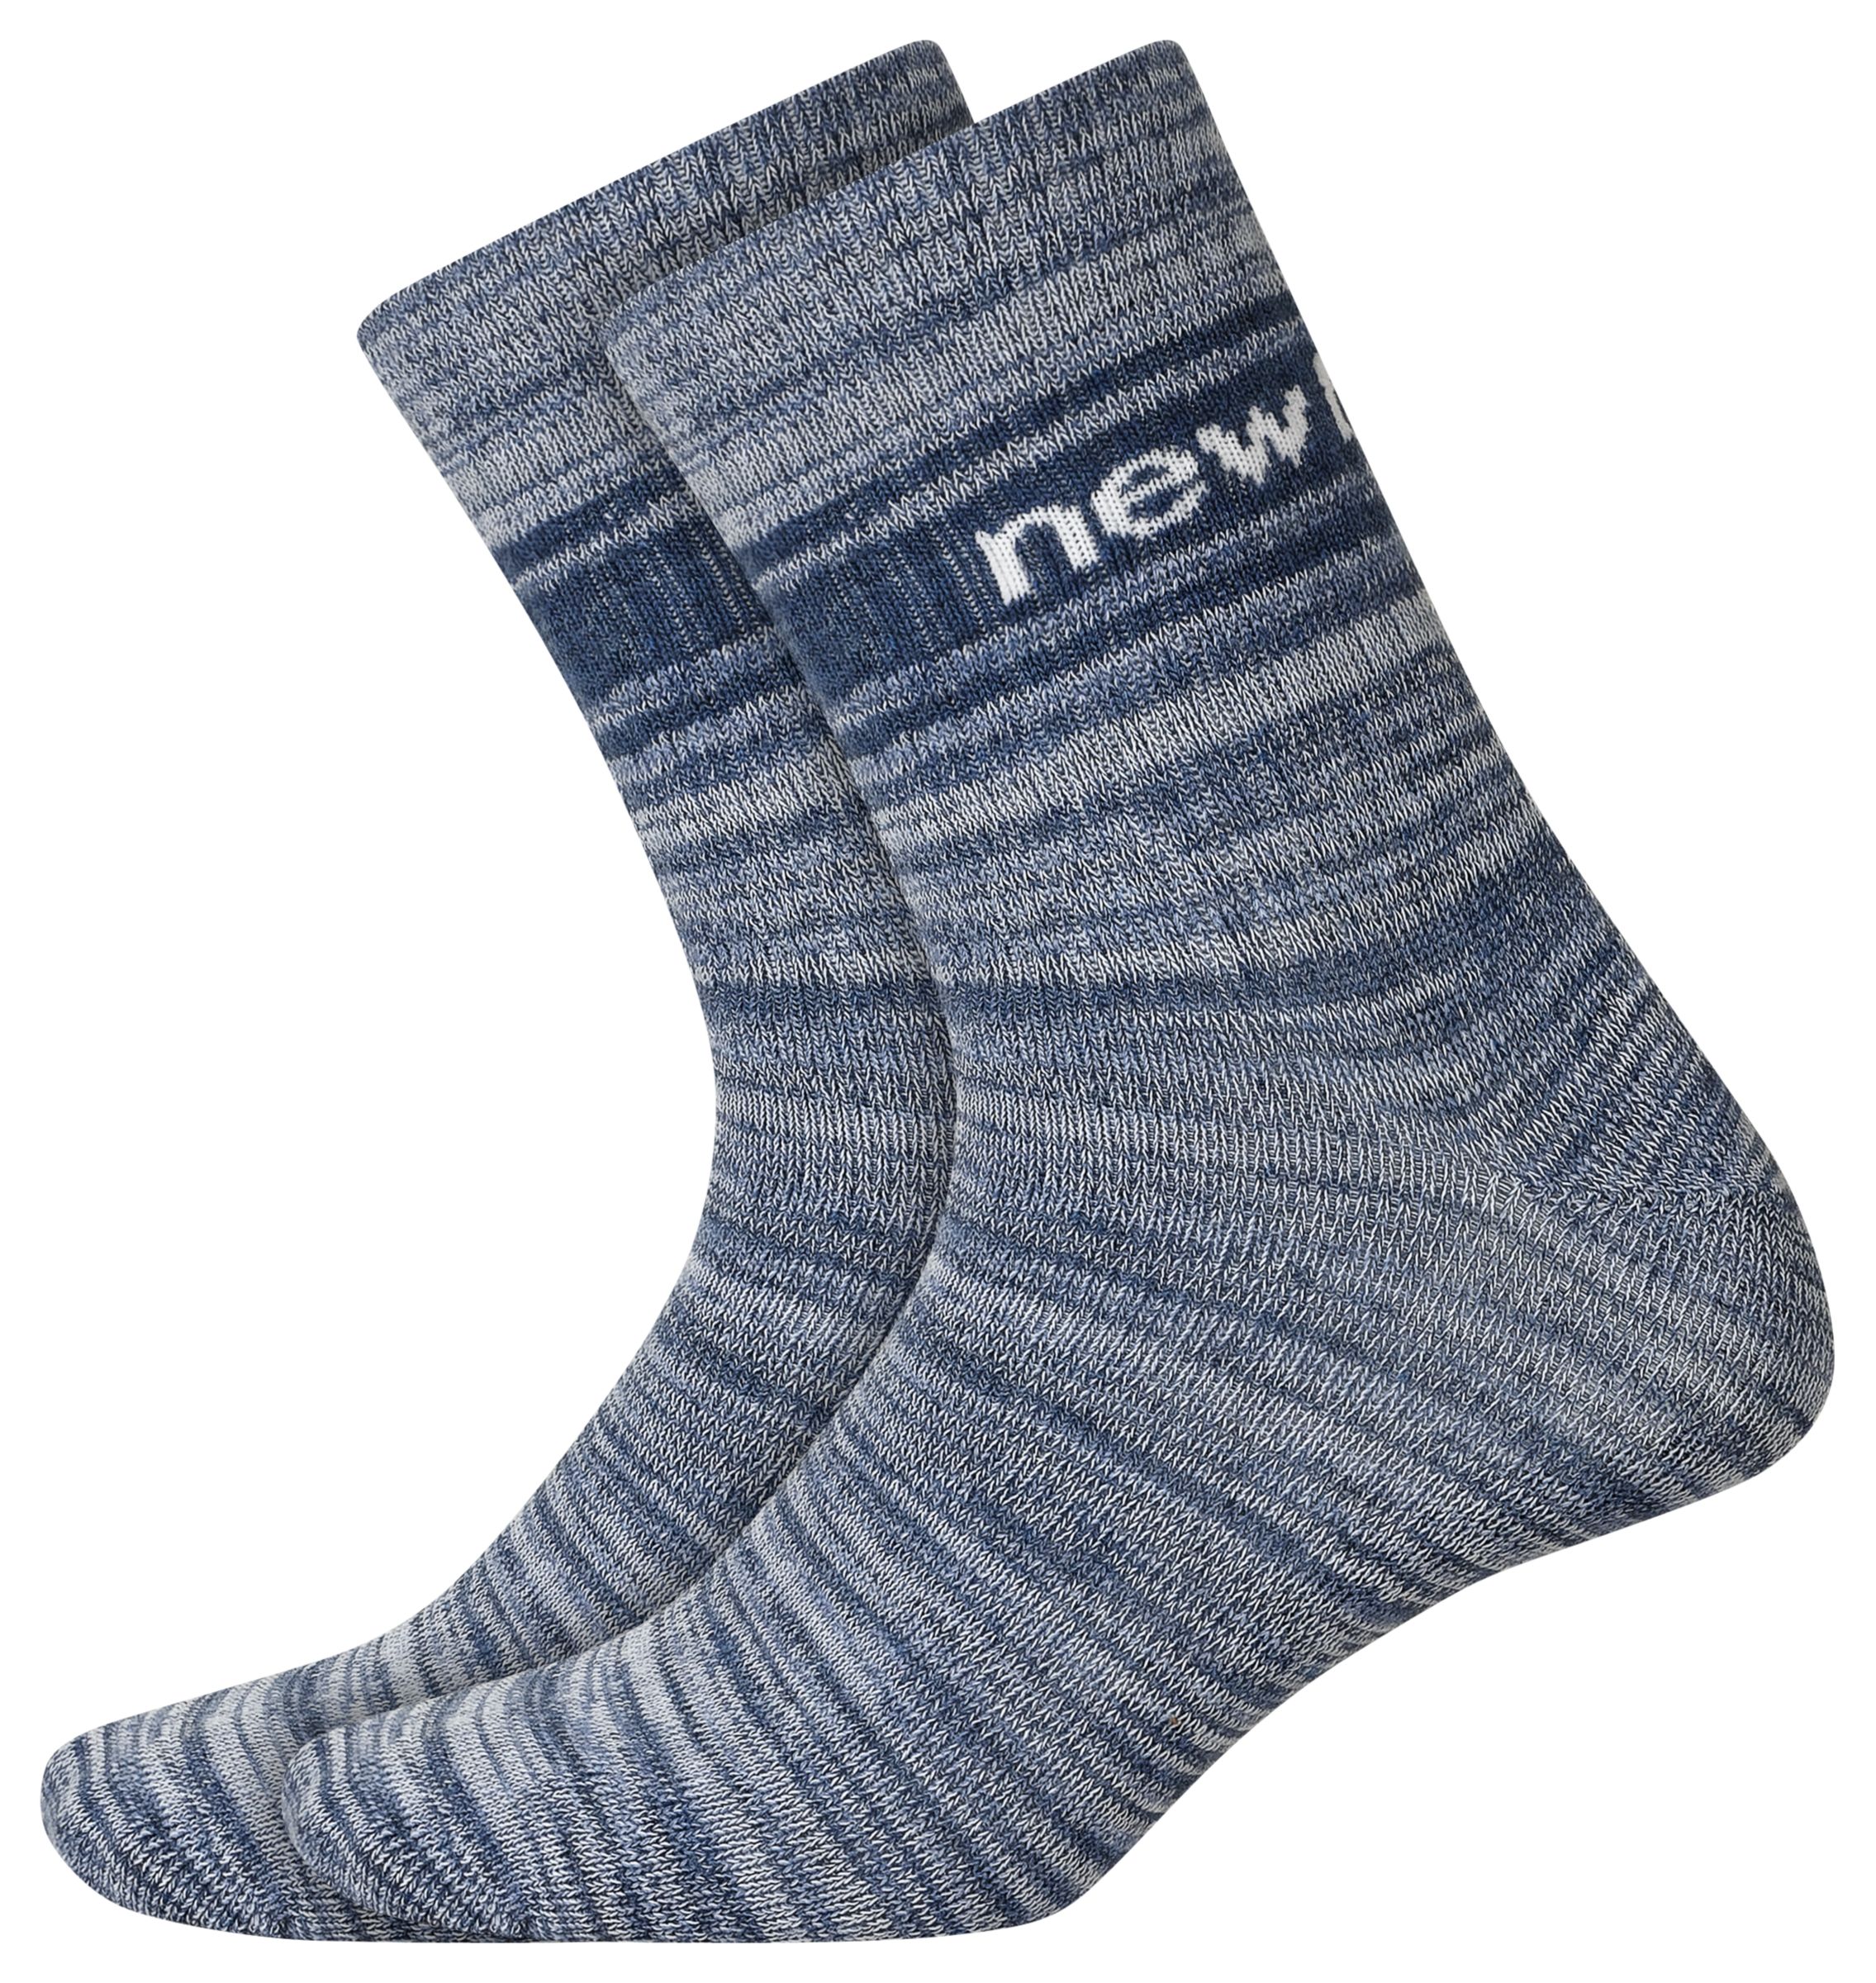 Lifestyle Midcrew Socks 2 Pair - New 